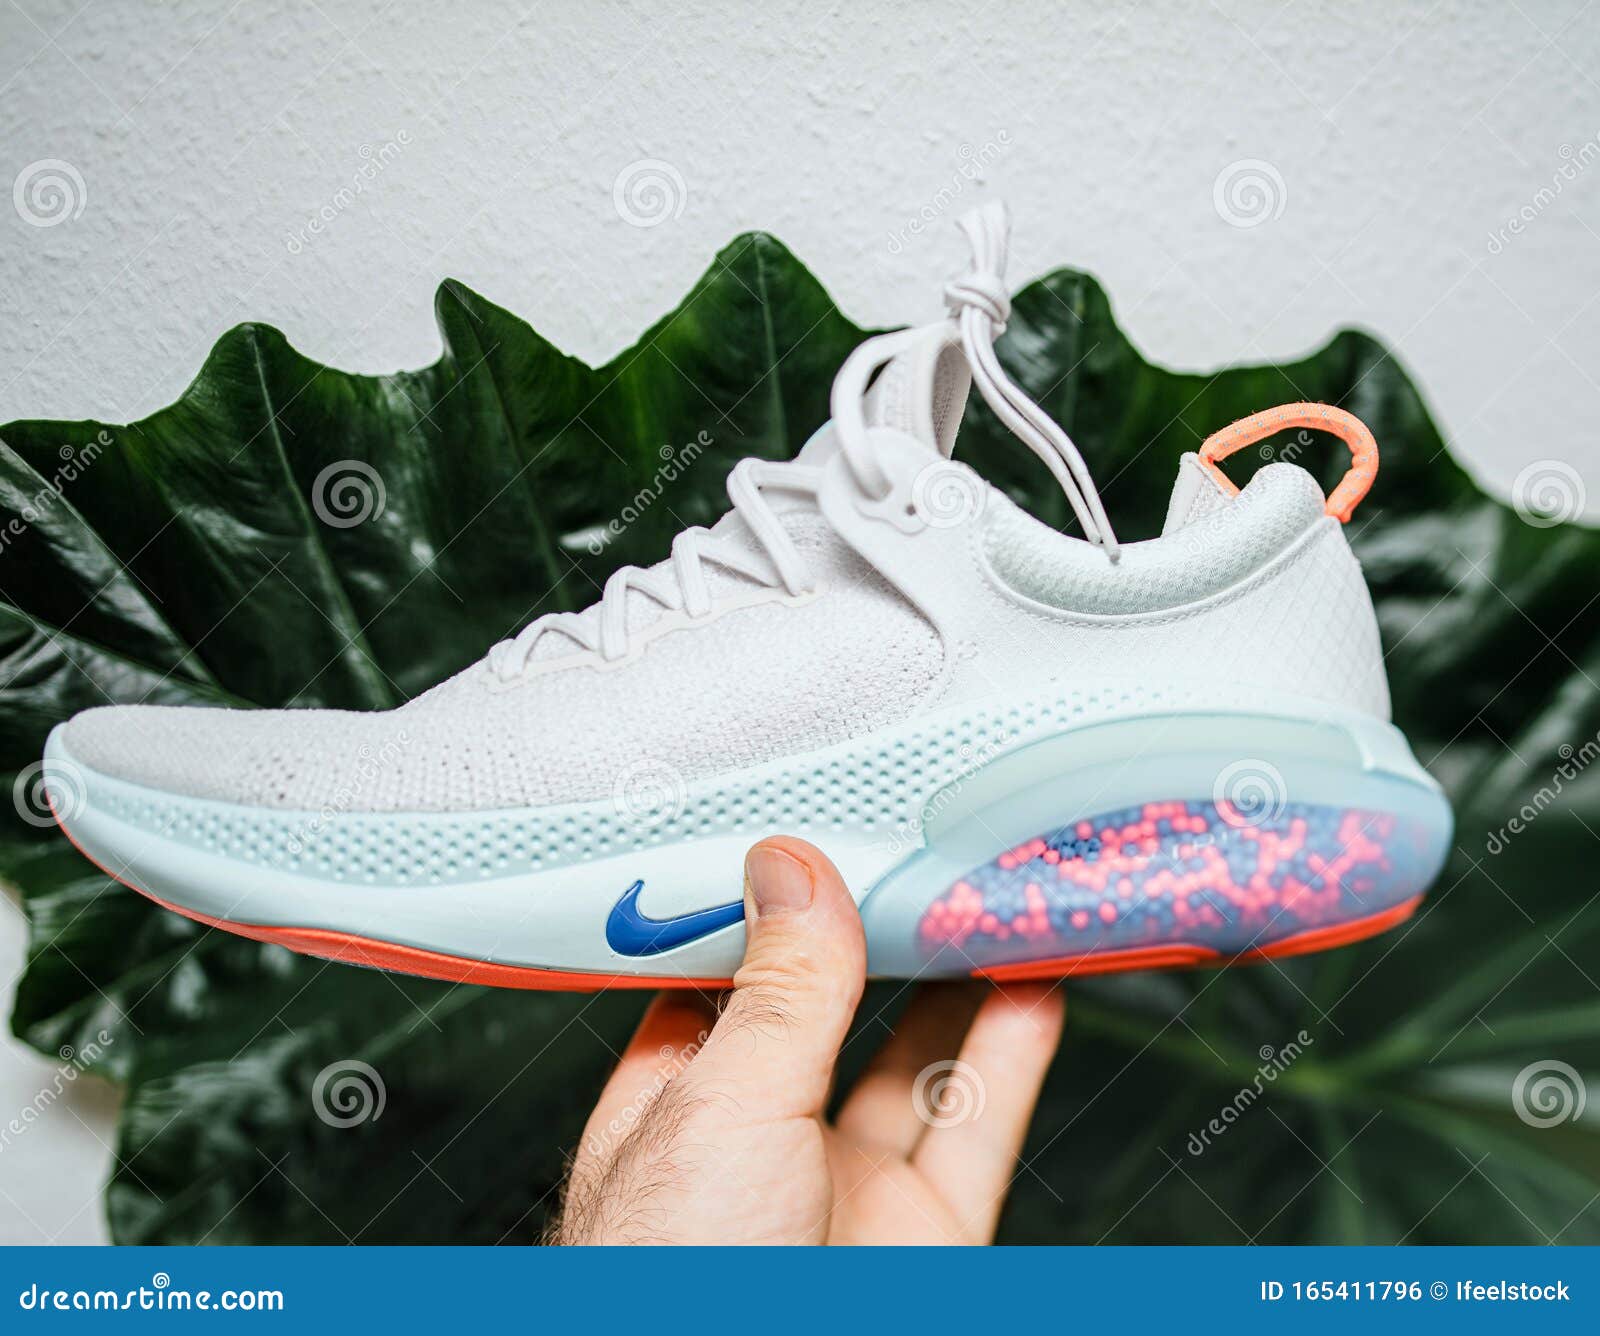 nike 2019 joyride white running shoes